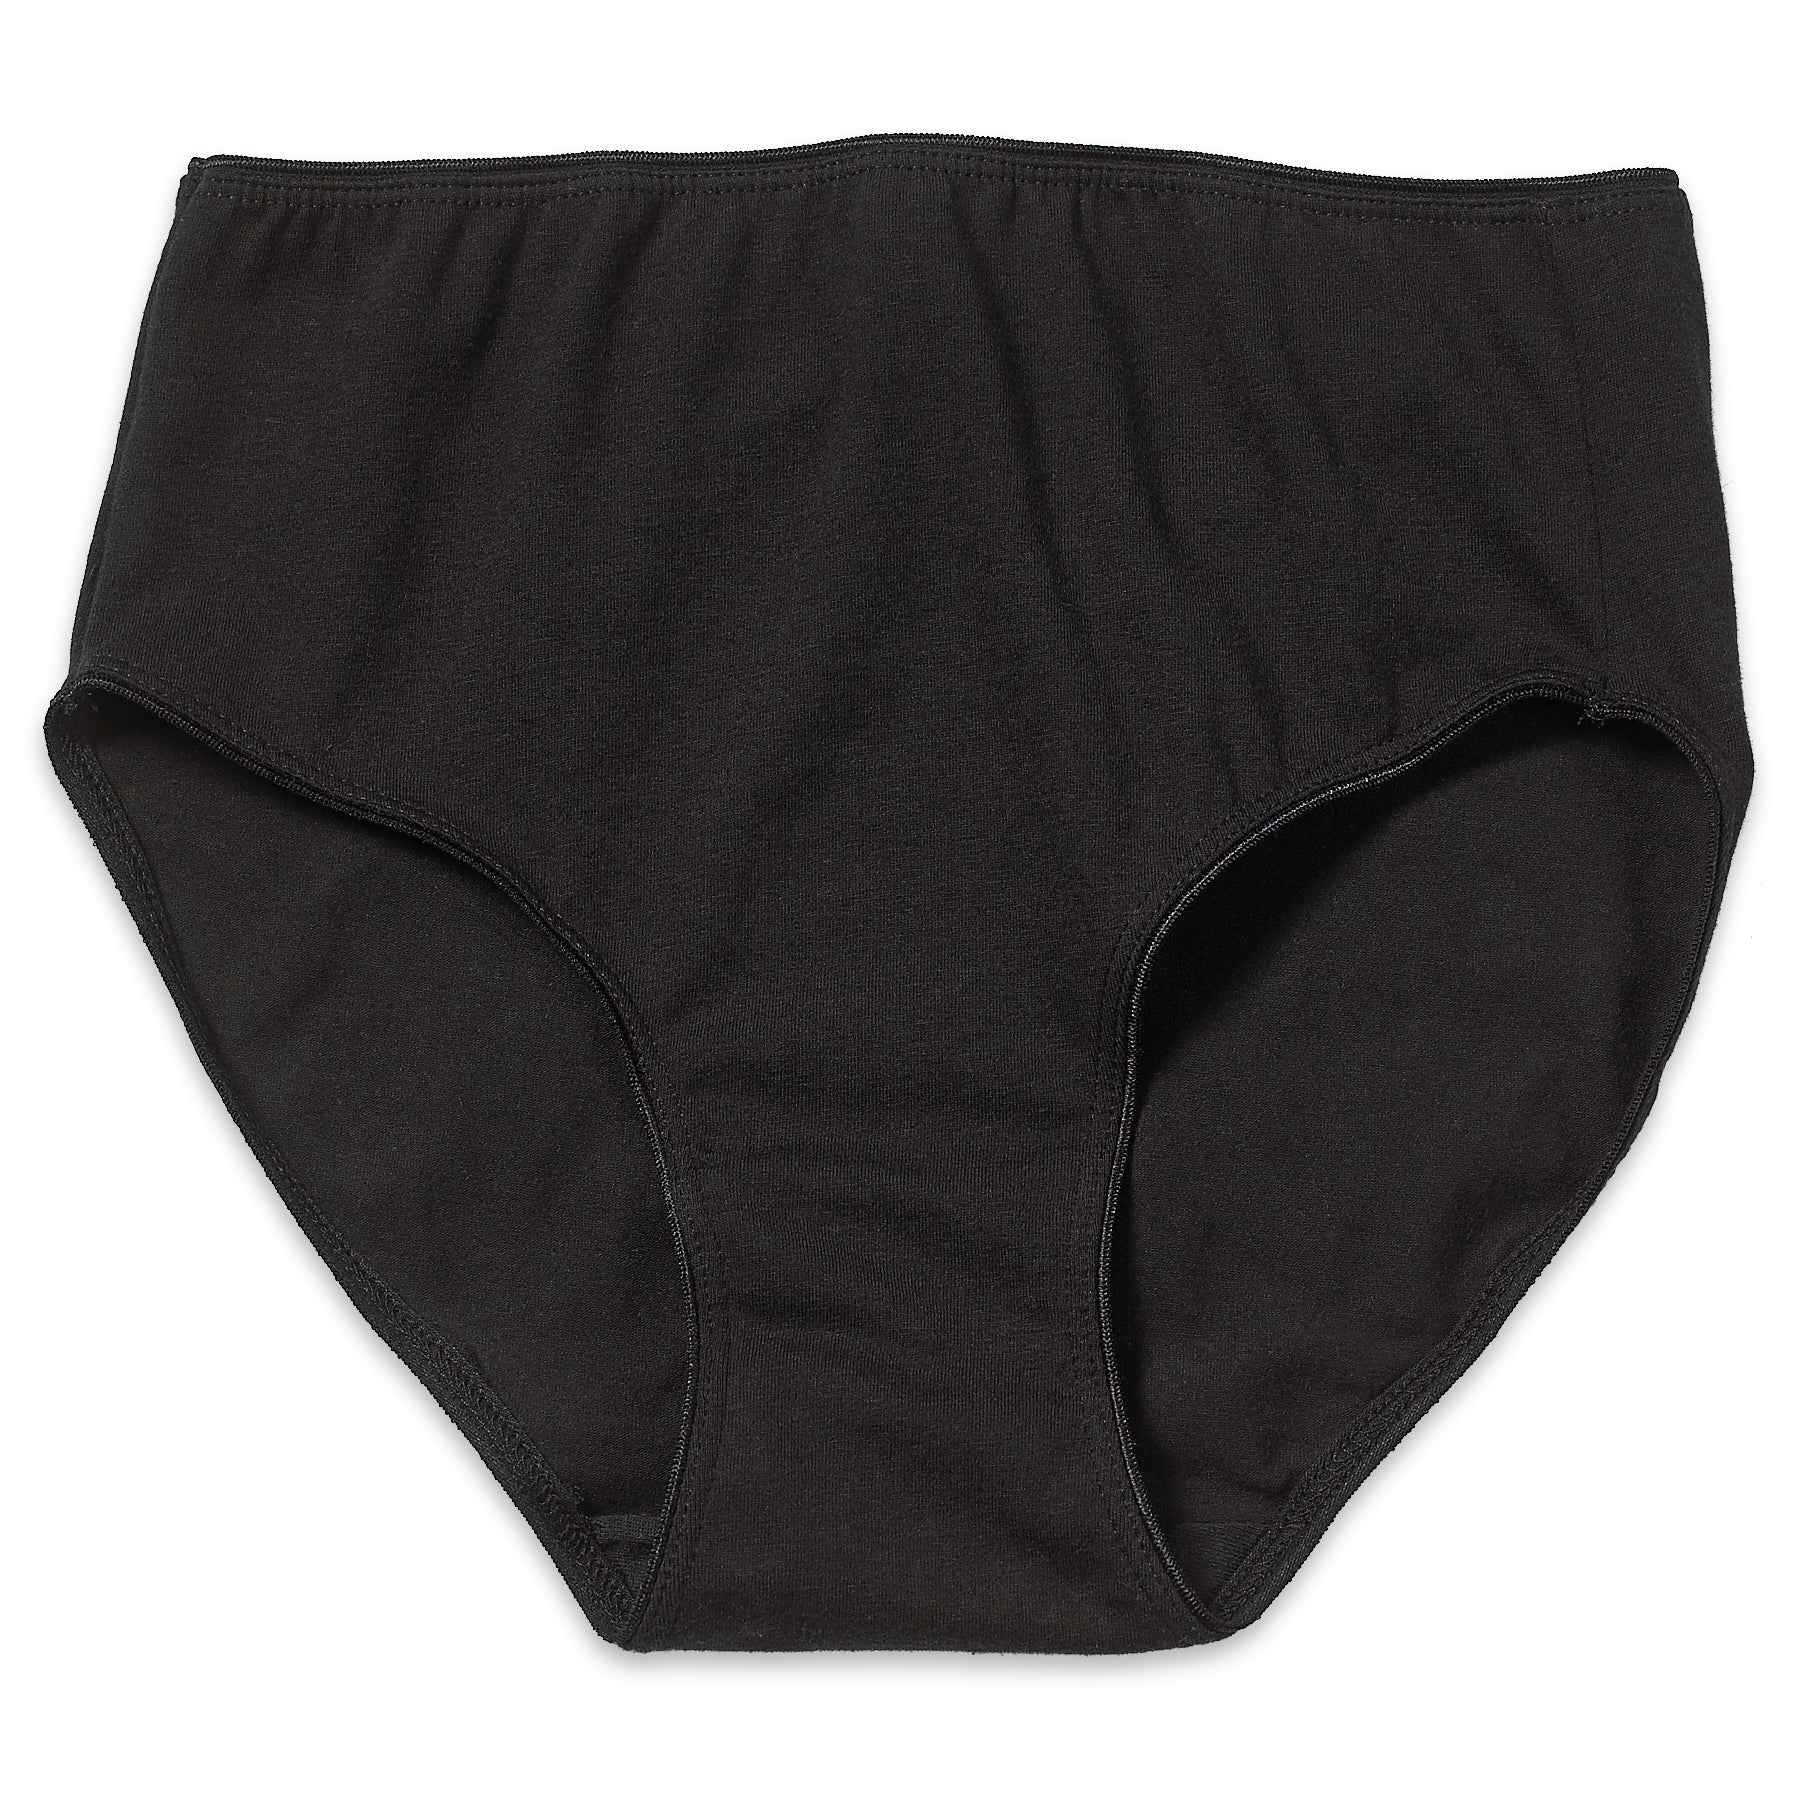 Spandex Underwear Women